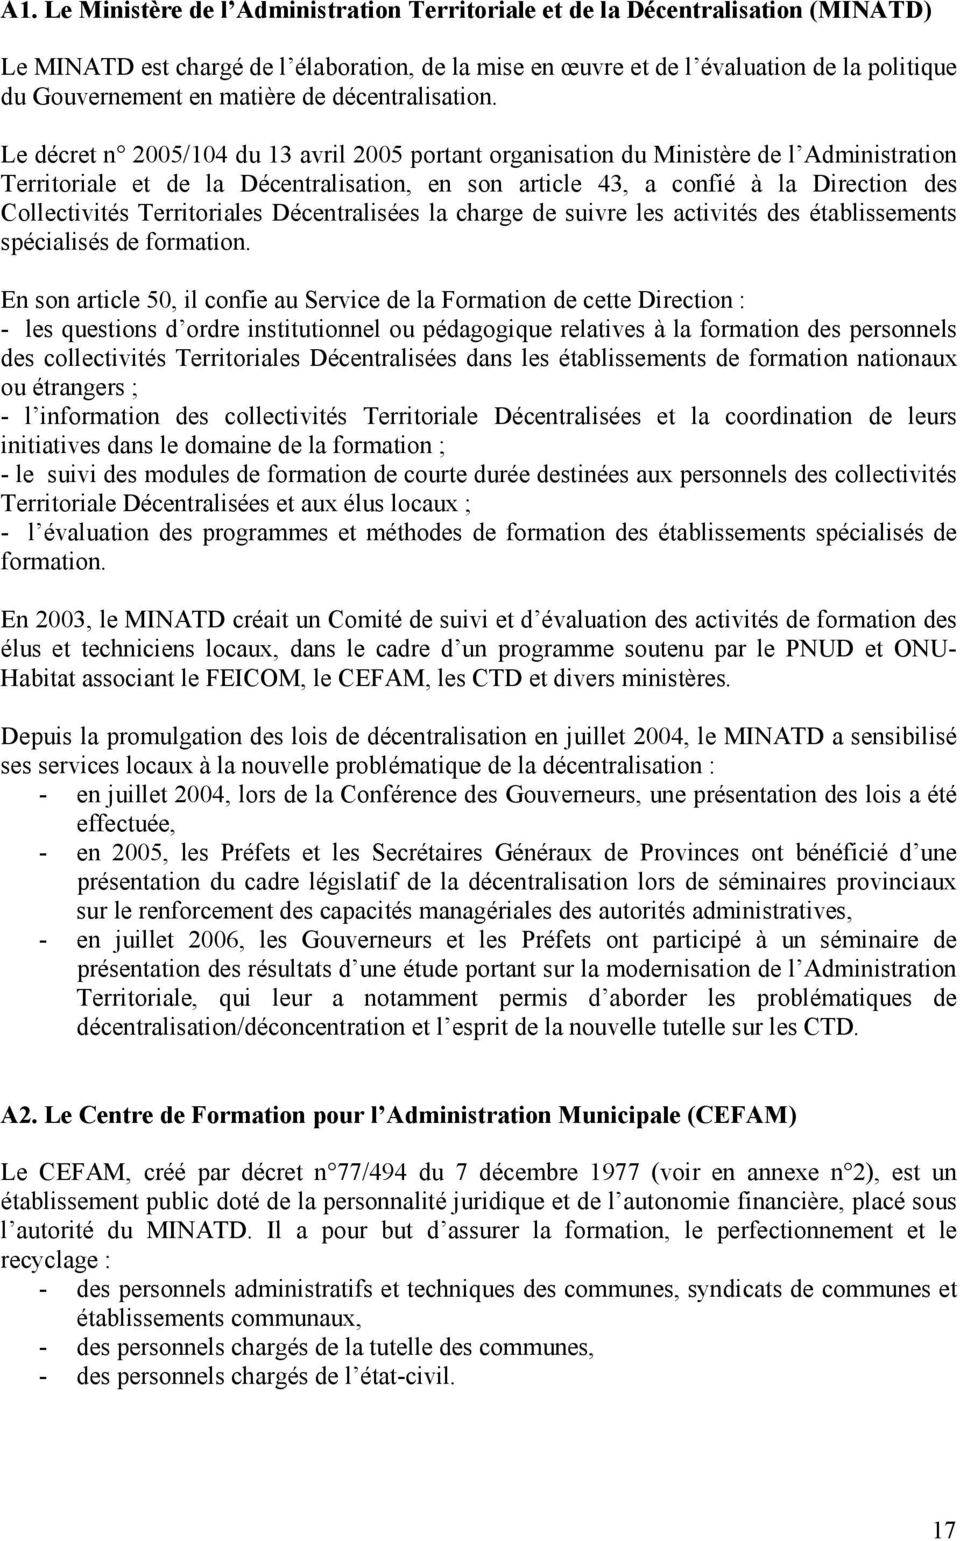 Le décret n 2005/104 du 13 avril 2005 portant organisation du Ministère de l Administration Territoriale et de la Décentralisation, en son article 43, a confié à la Direction des Collectivités